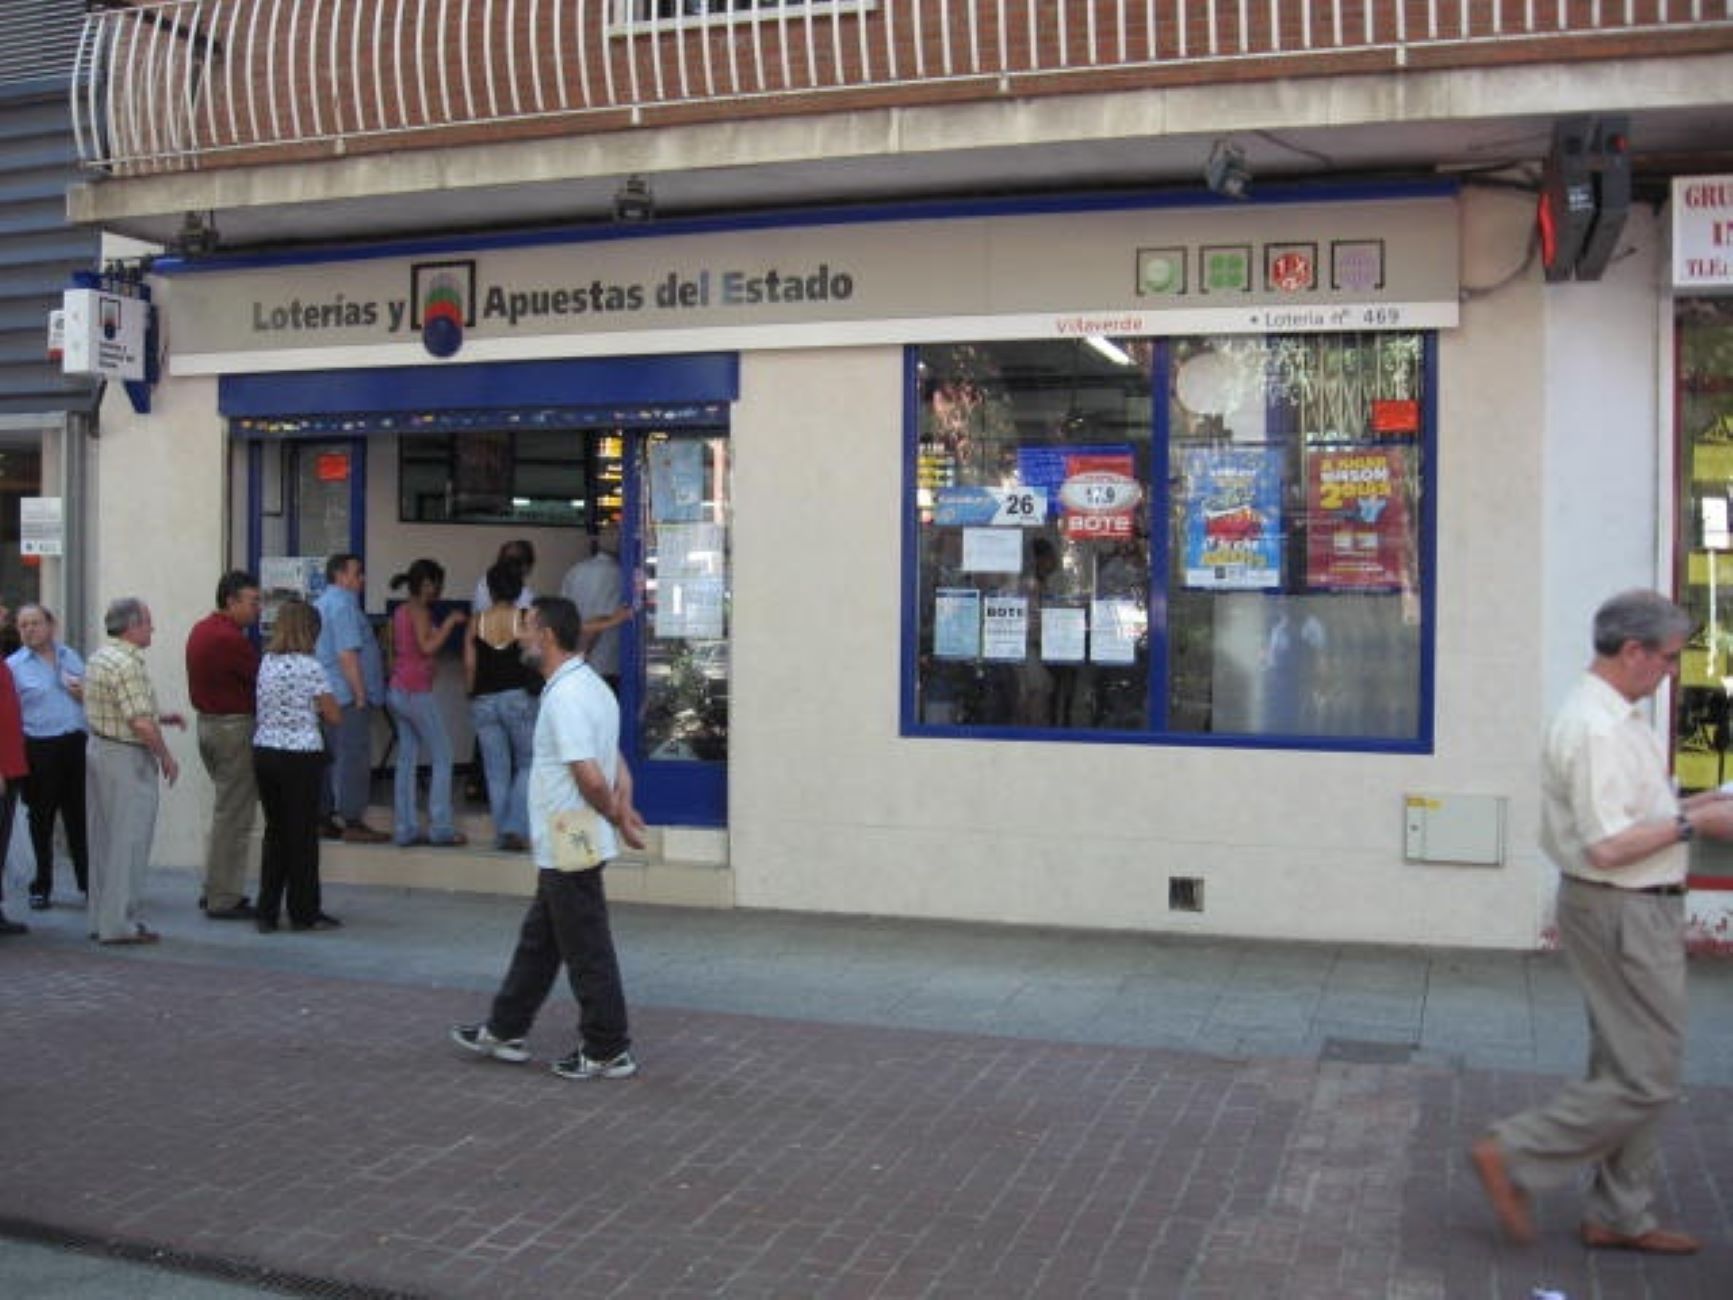 Administración loterías 469 Madrid / Loterías y Apuestas del Estado